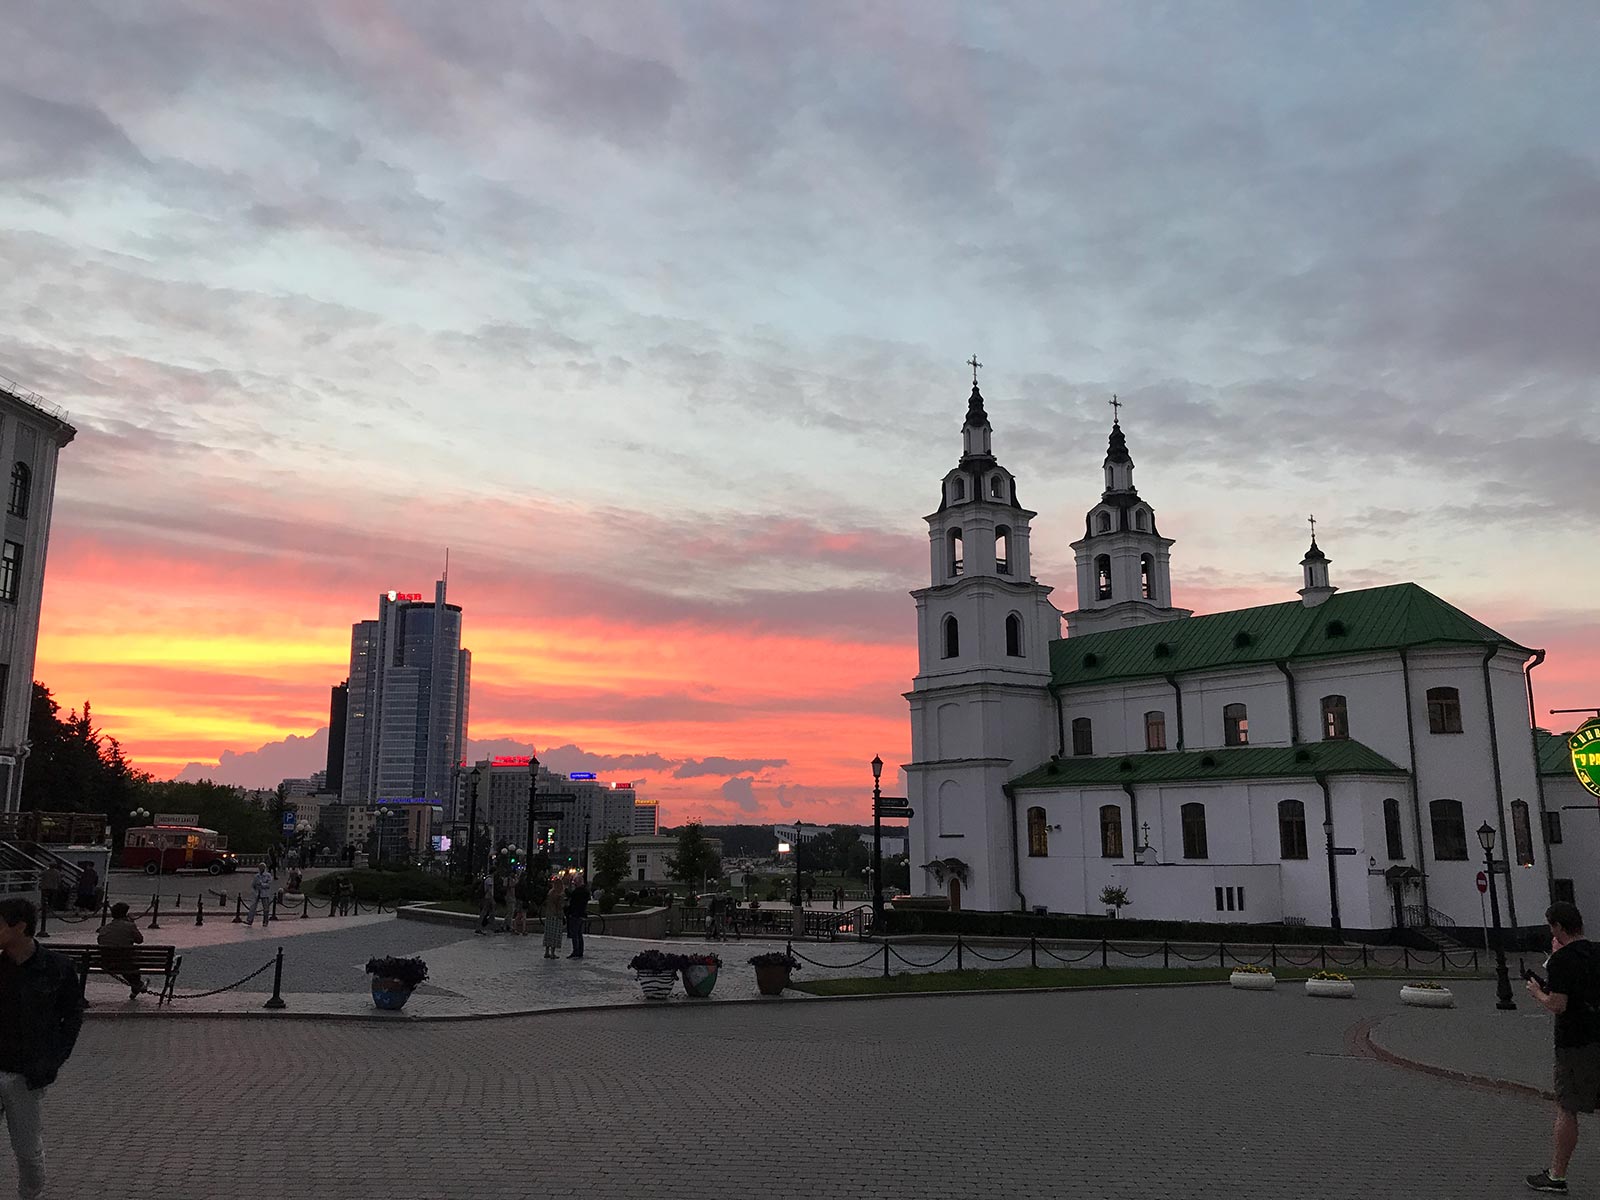 Sunset near a church in Minsk, Belarus. Minsk & Warsaw